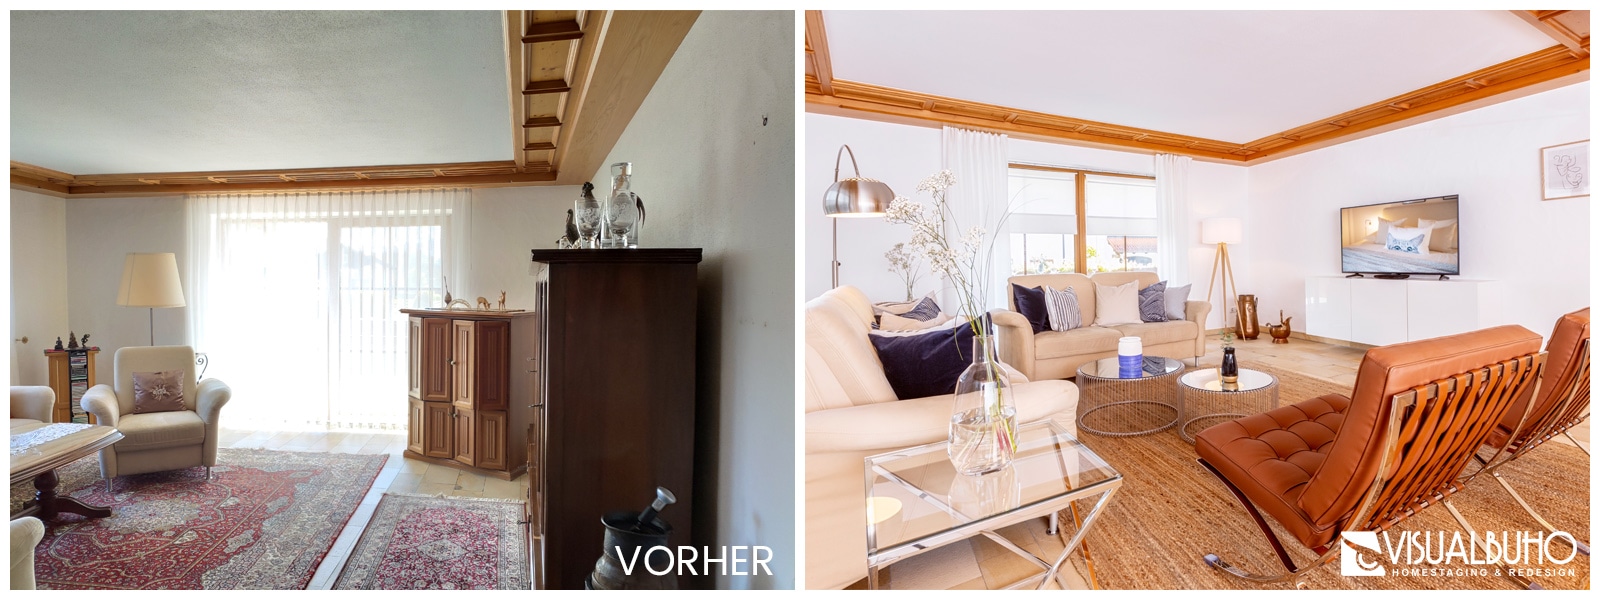 Wohnzimmer Ferienhaus Lechbruck Vergleichsbild